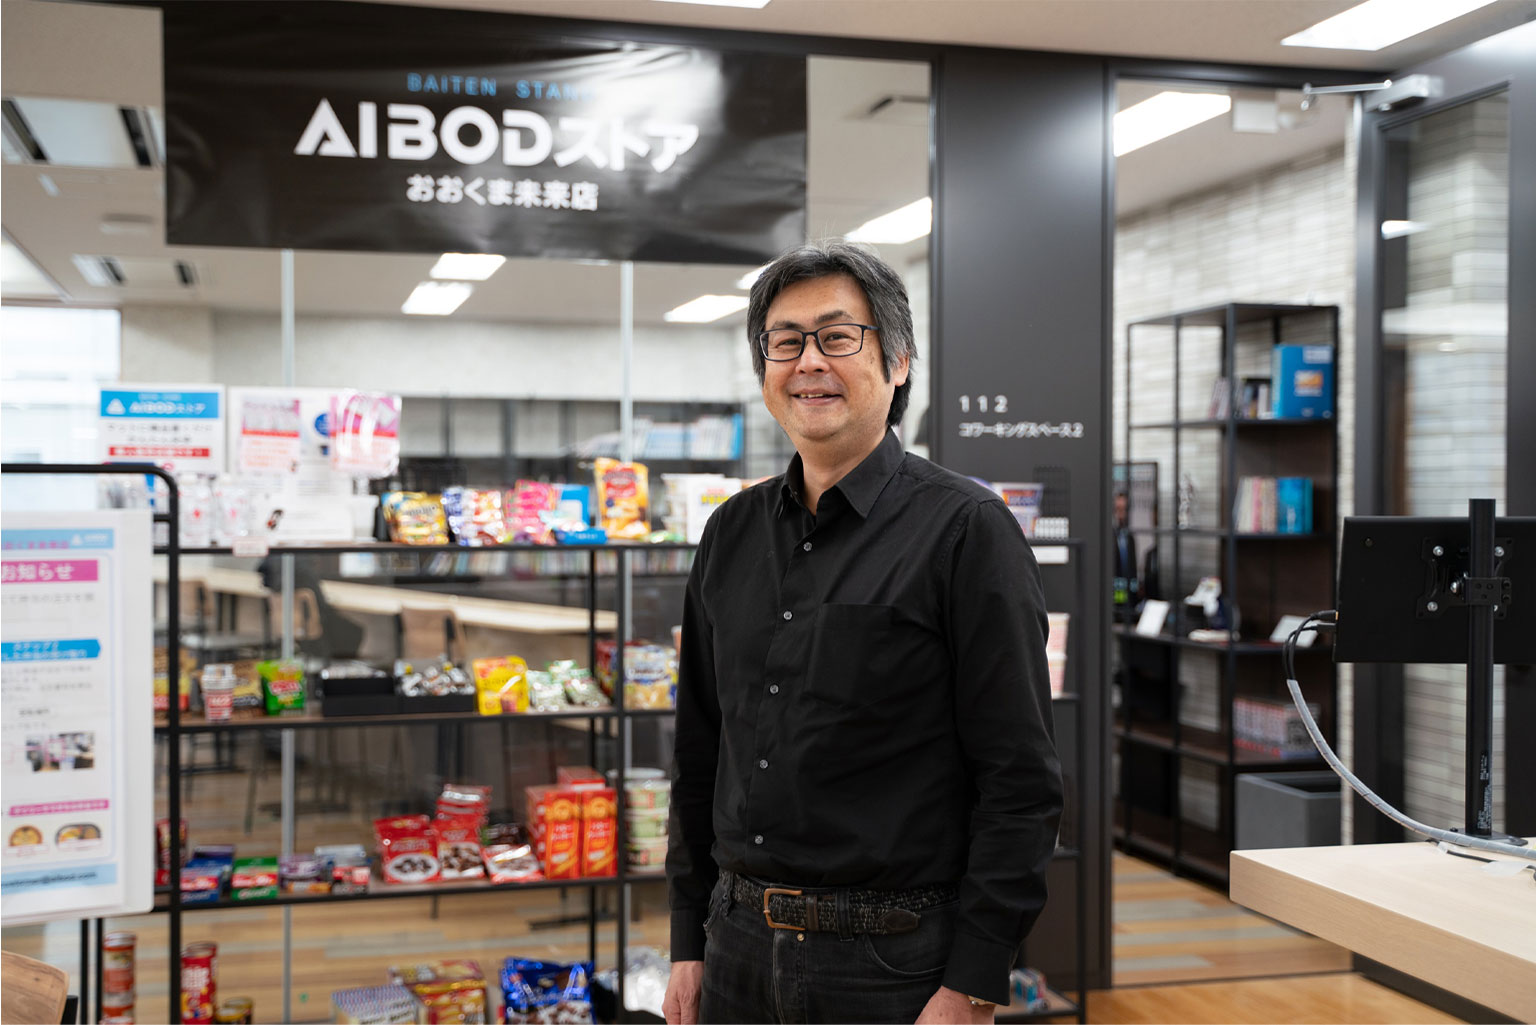 大熊町から日本を救う技術を。無人店舗で、過疎地域の生活インフラを整備する人工知能スタートアップ企業・AIBODが目指すこと